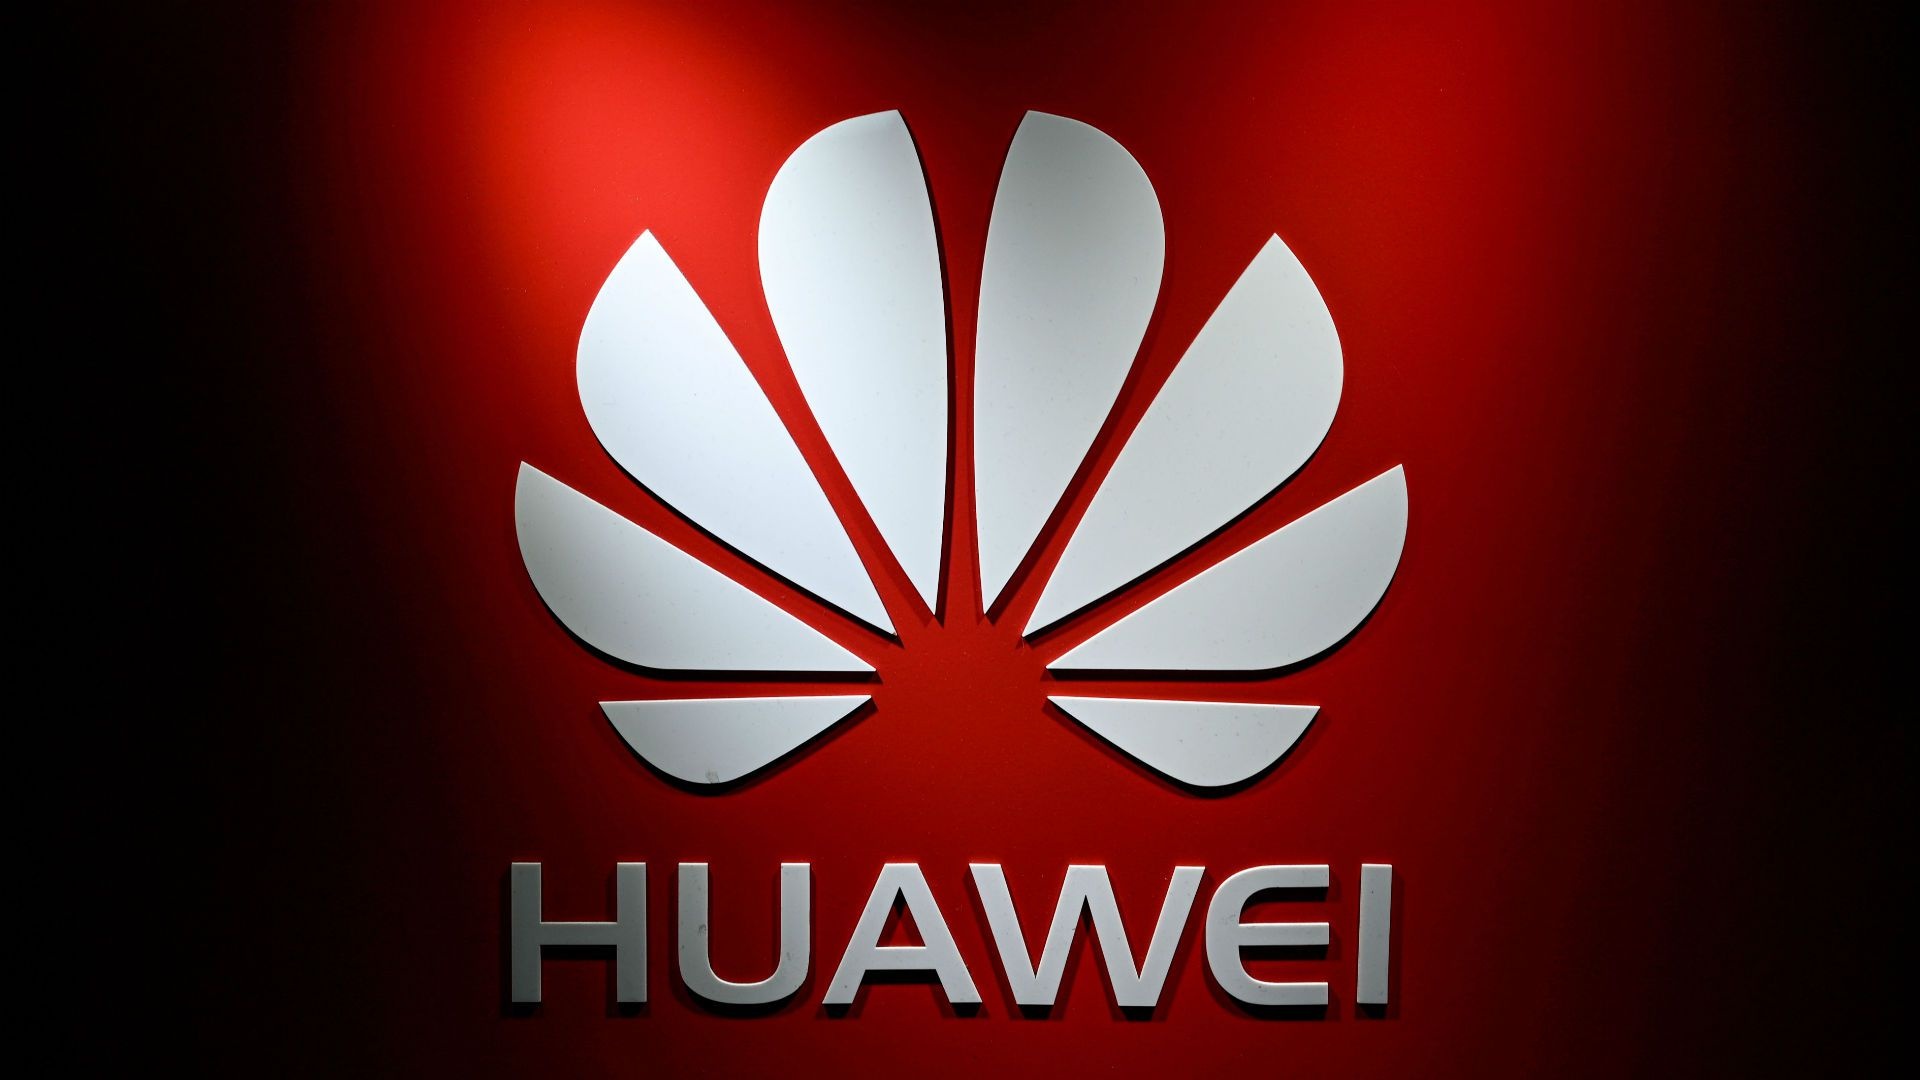 Huawei, Logo design, Minimalist style, Ryan Peltier, 1920x1080 Full HD Desktop